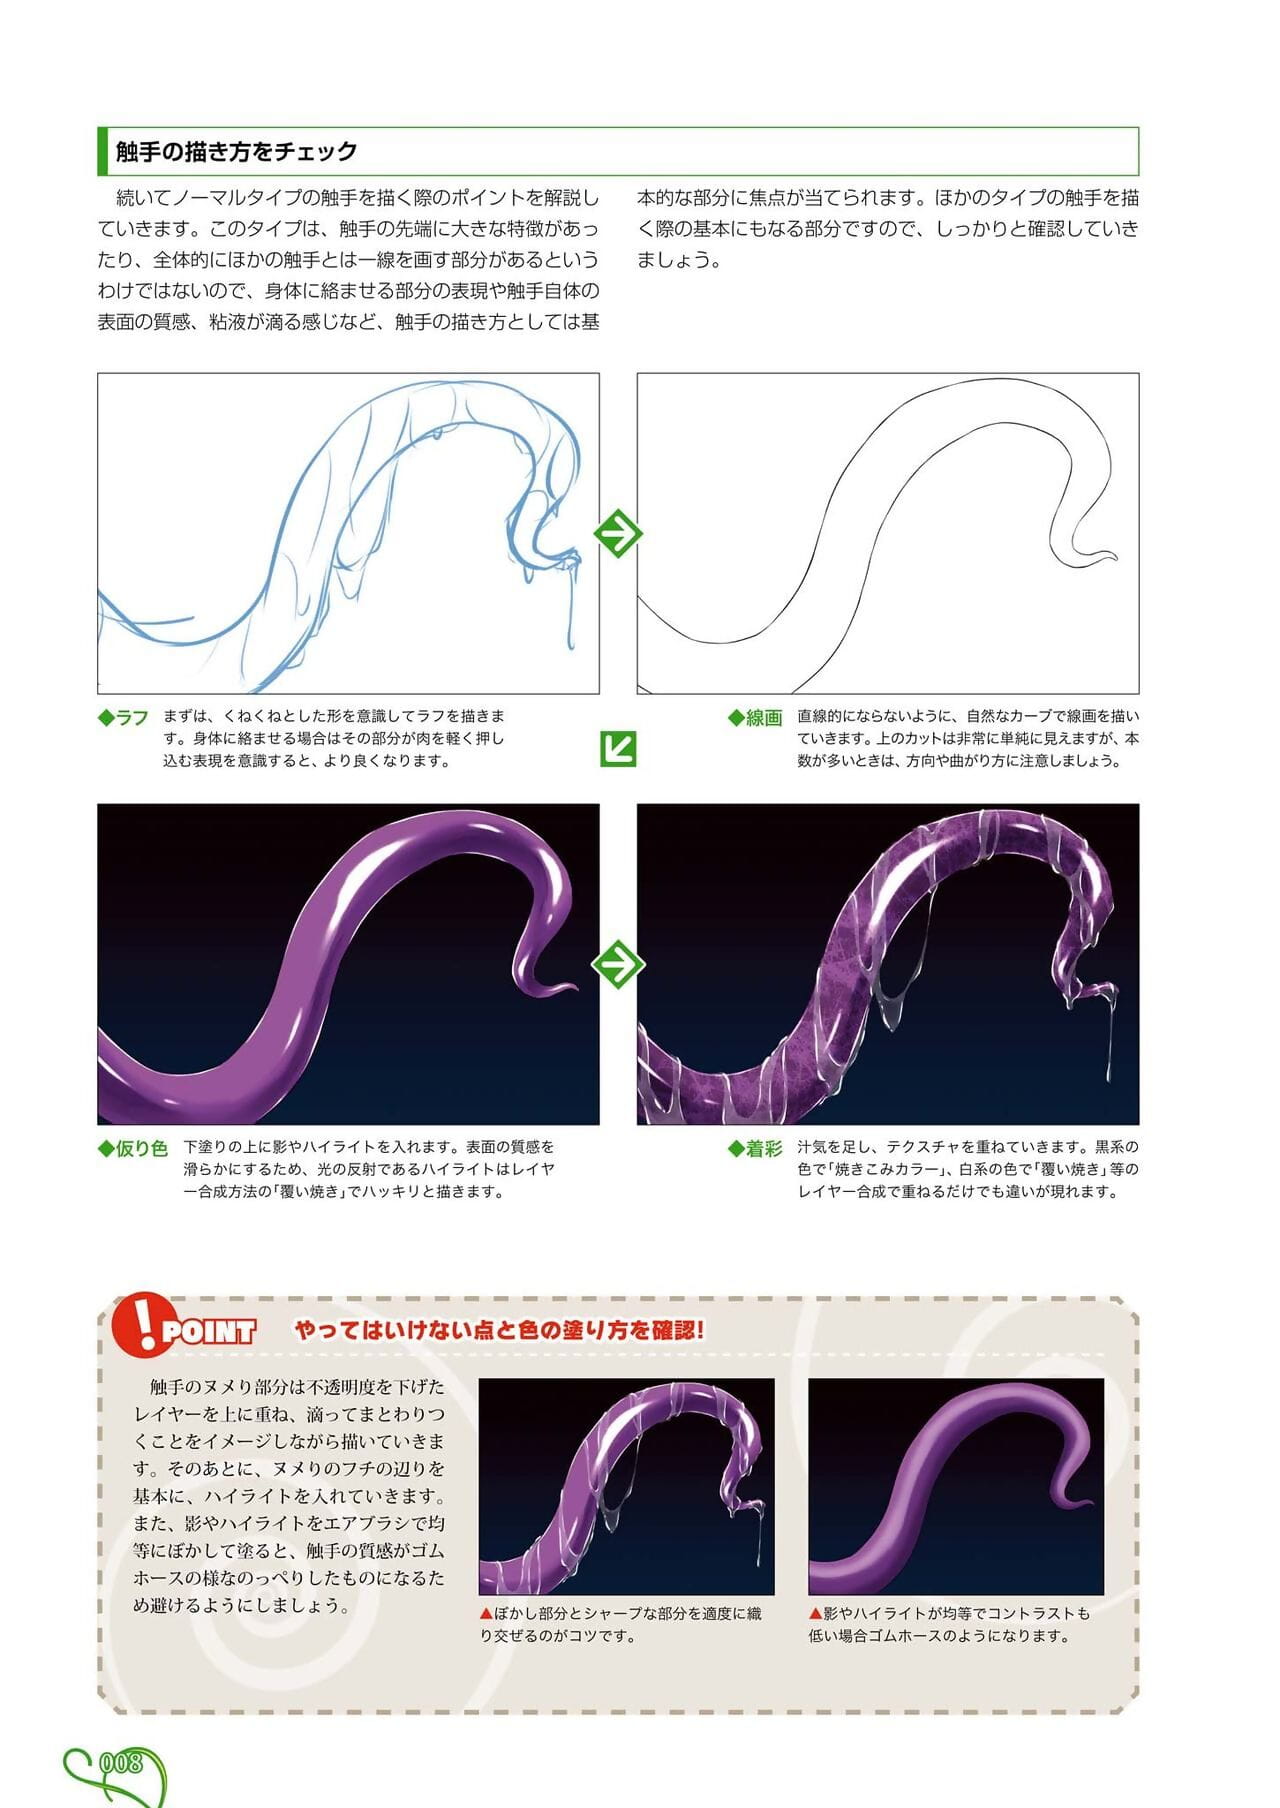 Làm sao phải vẽ tentacles page 1